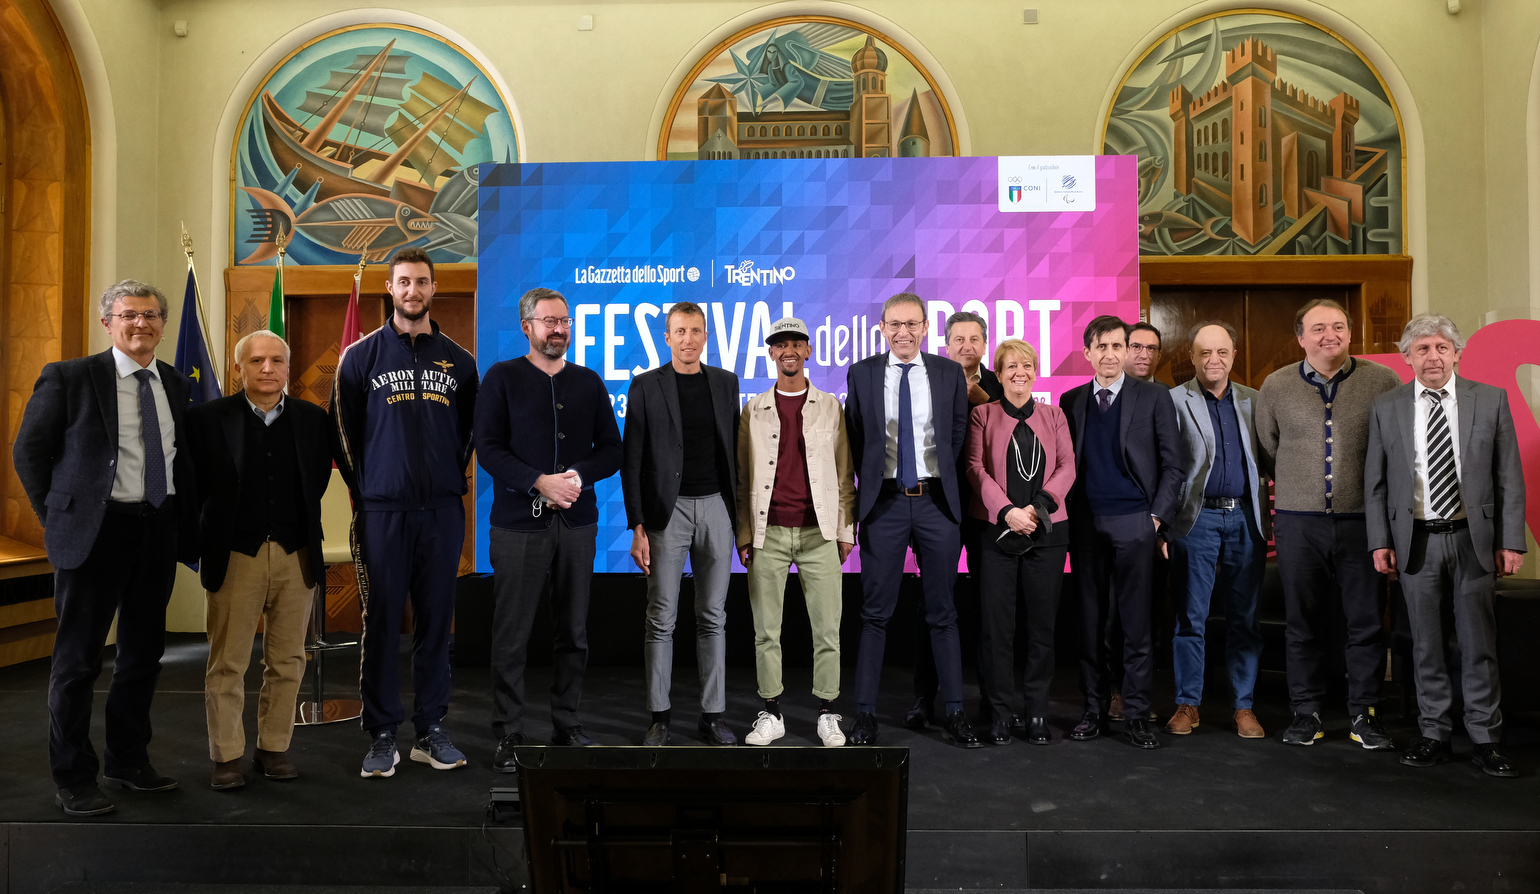 Conferenza stampa di presentazione delle date e del tema del Festival dello Sport 2022 a Trento: “Momenti di gloria” (gruppo di rappresentanza)